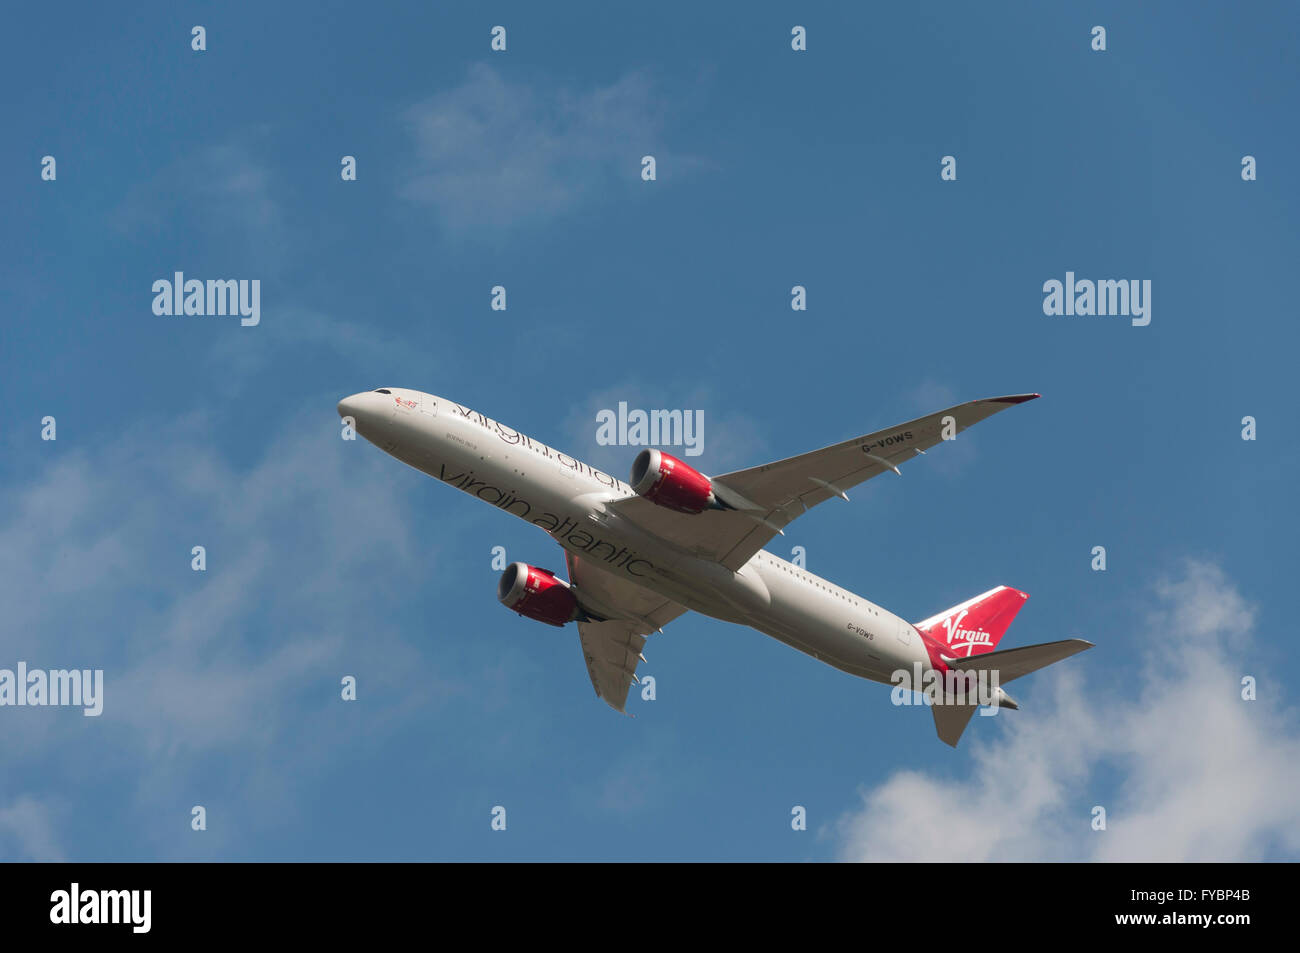 Virgin Atlantic Boeing 787 Dreamliner avions qui décollent de l'aéroport de Heathrow, Londres, Angleterre, Royaume-Uni Banque D'Images